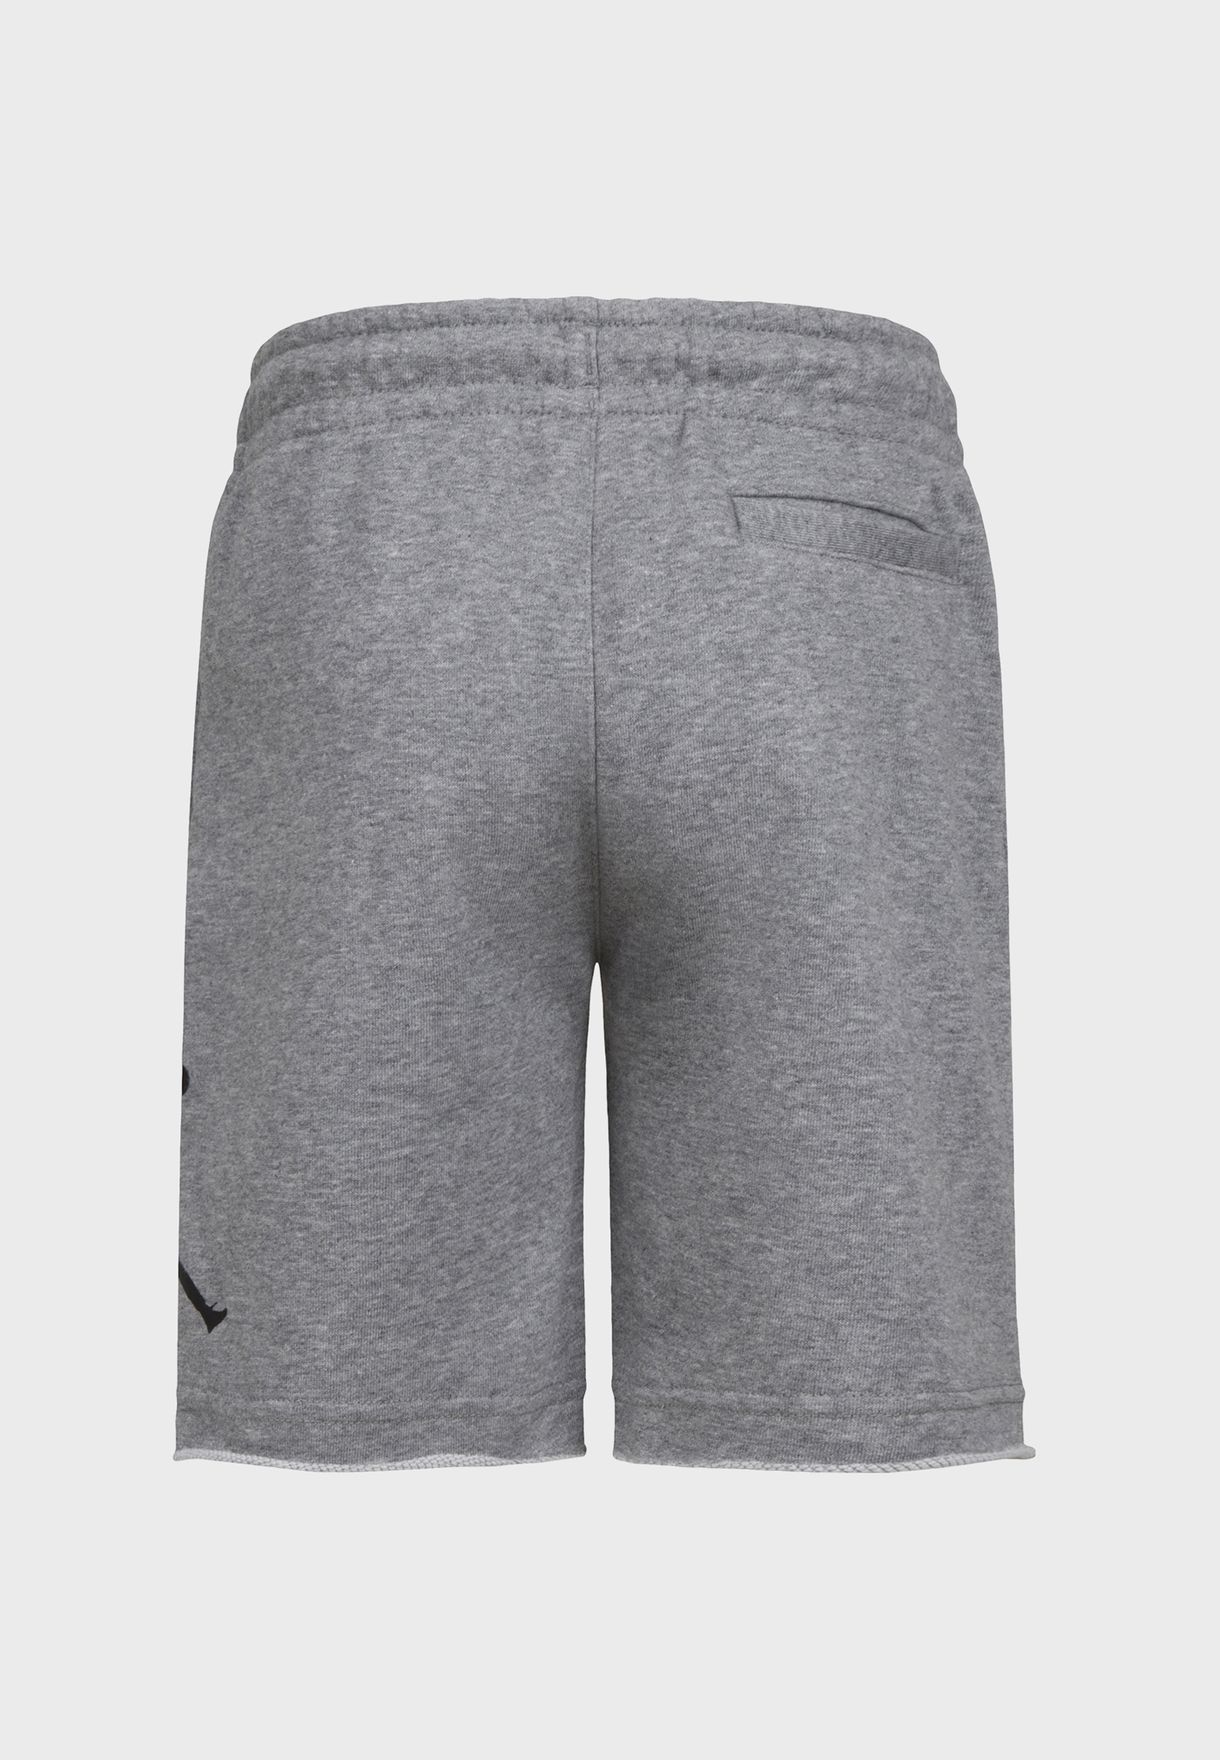 jordan grey fleece shorts